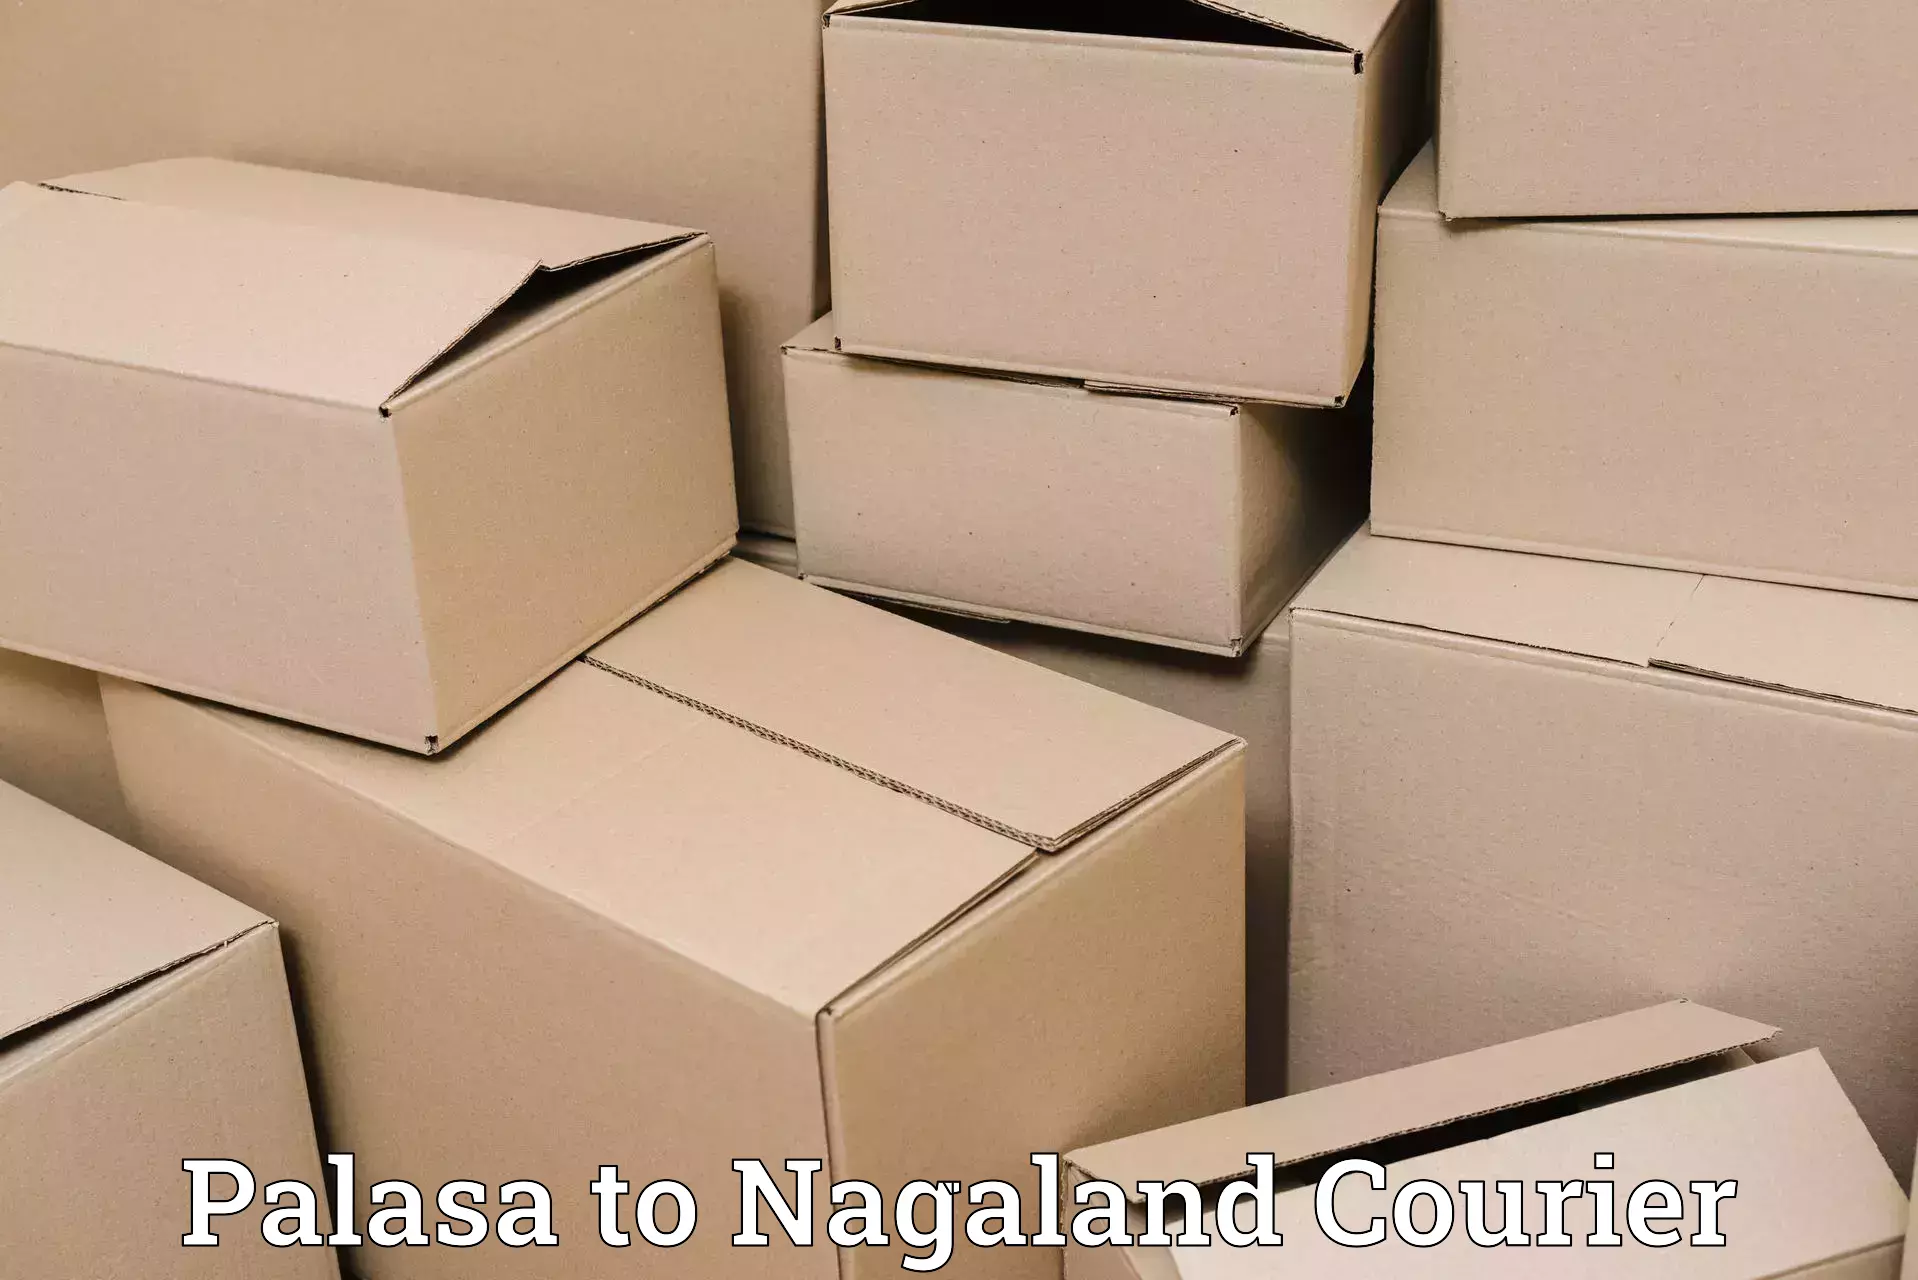 Holiday shipping services Palasa to NIT Nagaland